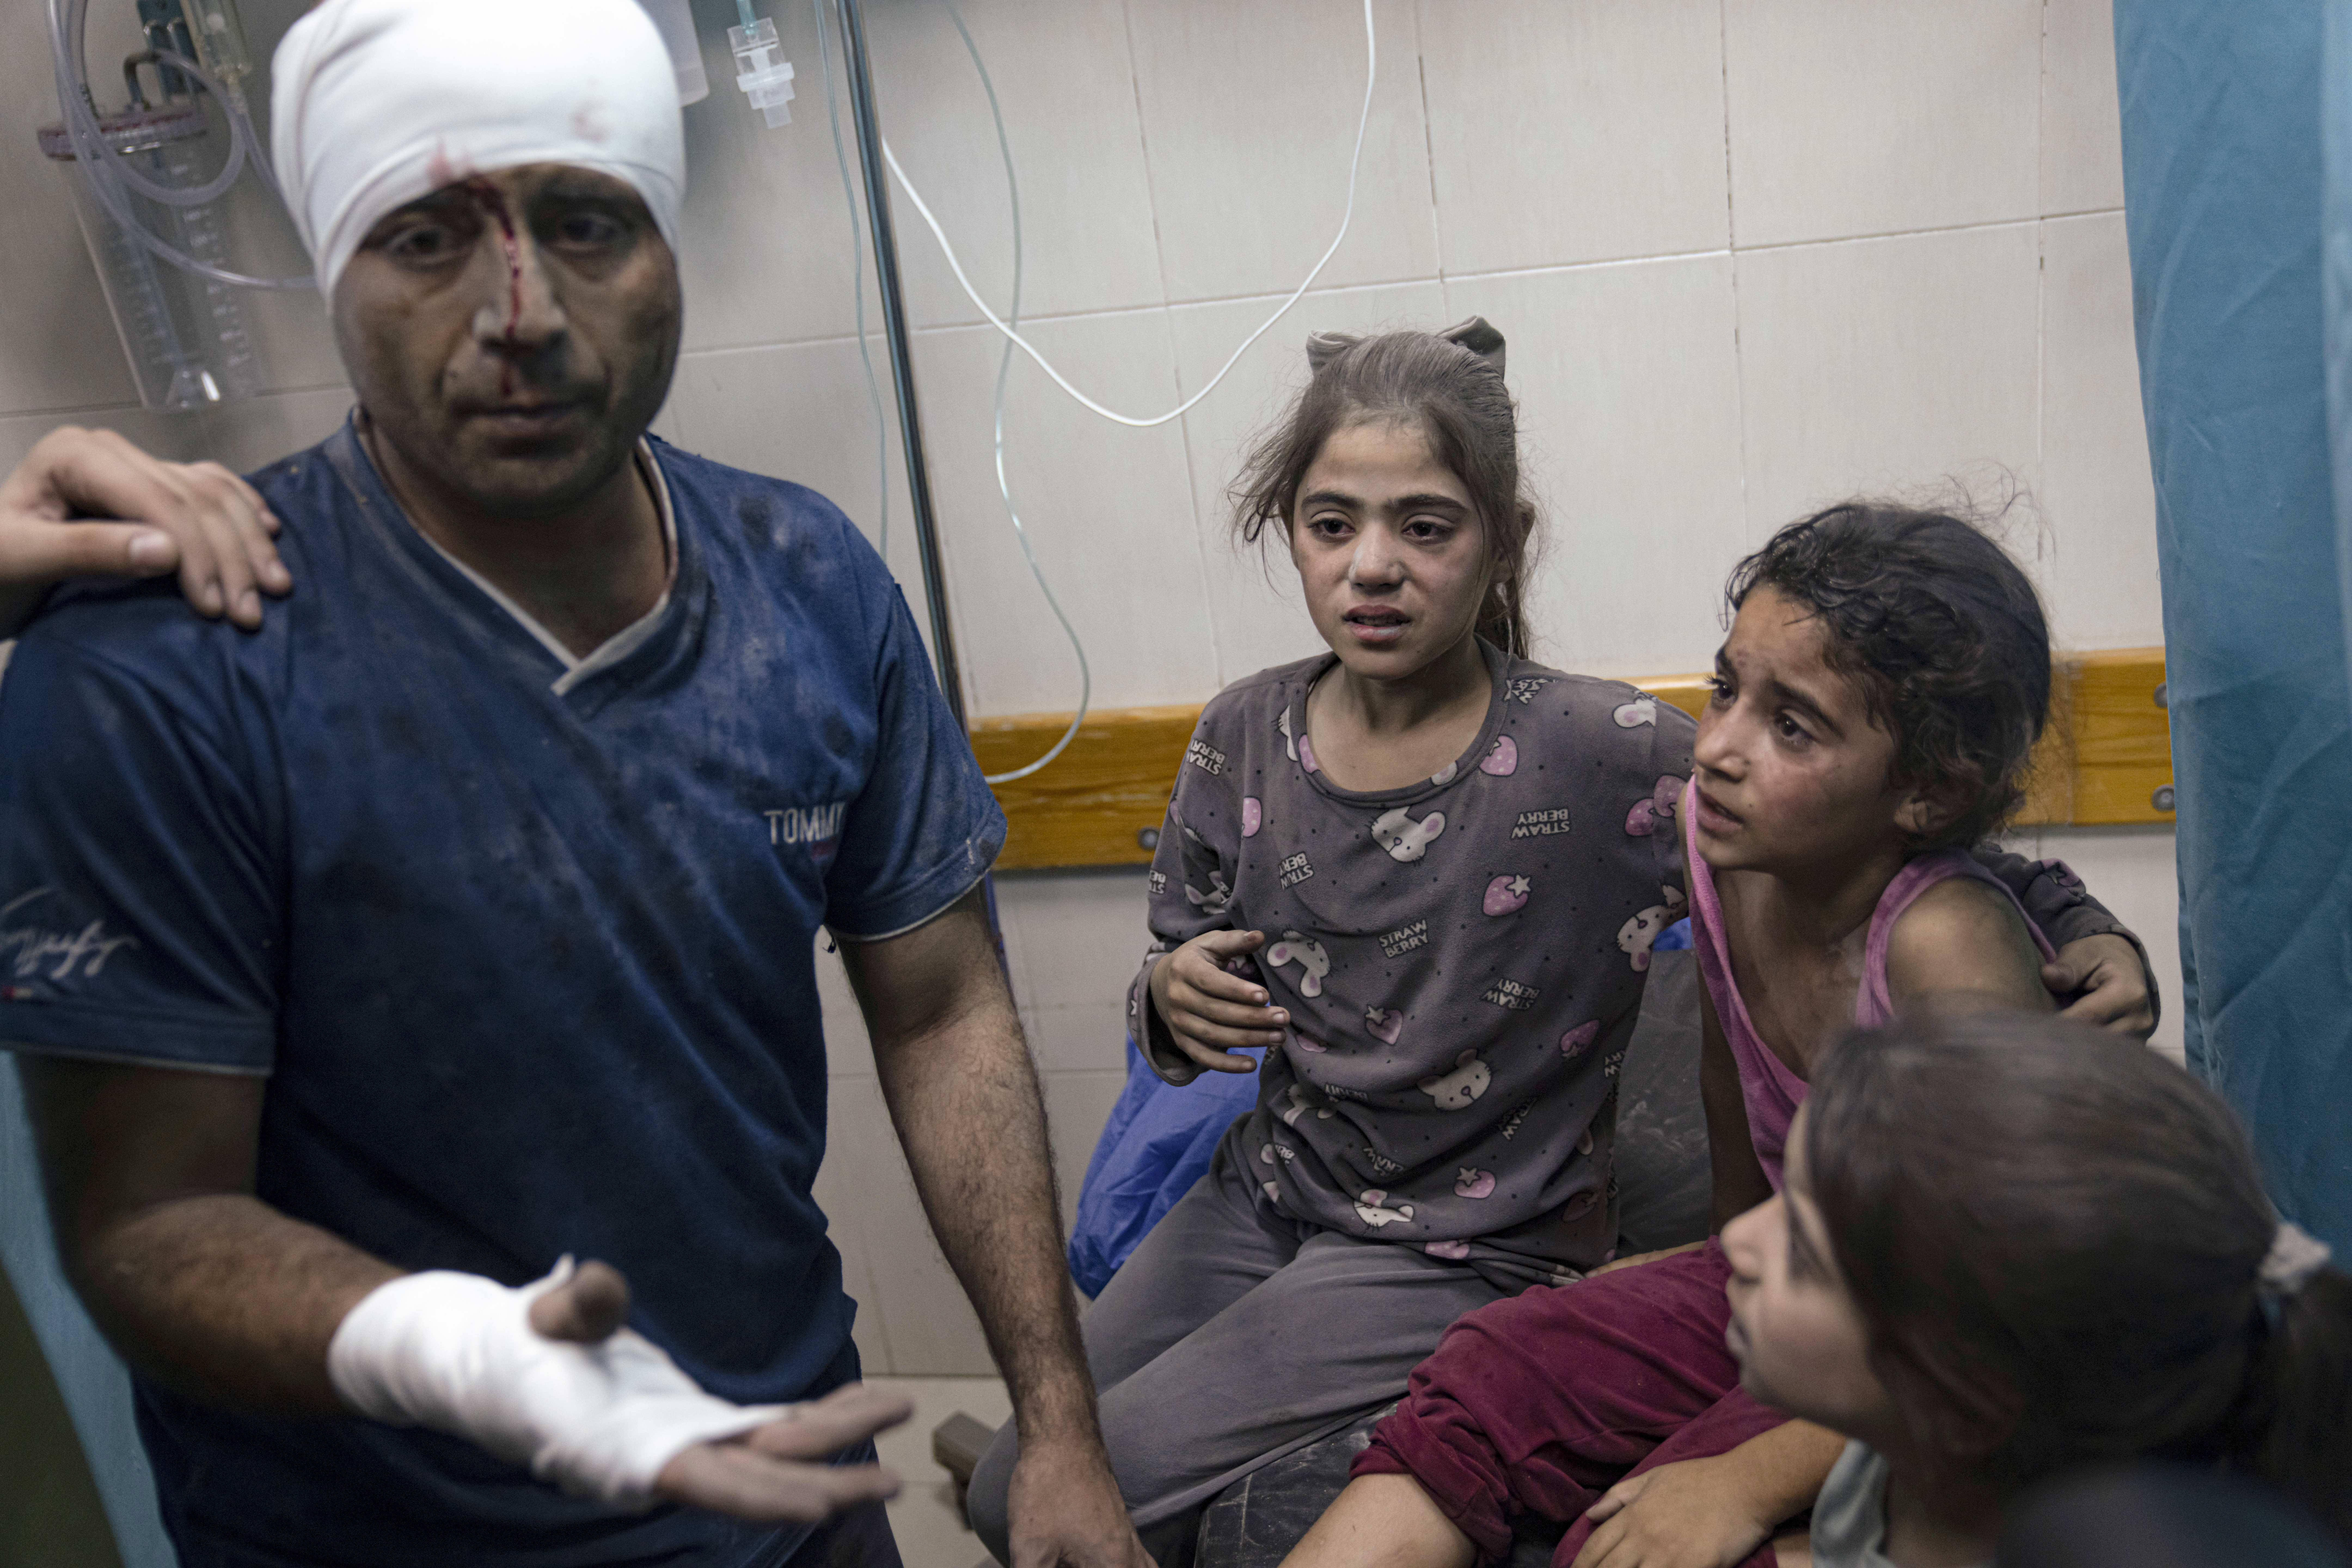 Gaza hospital blast